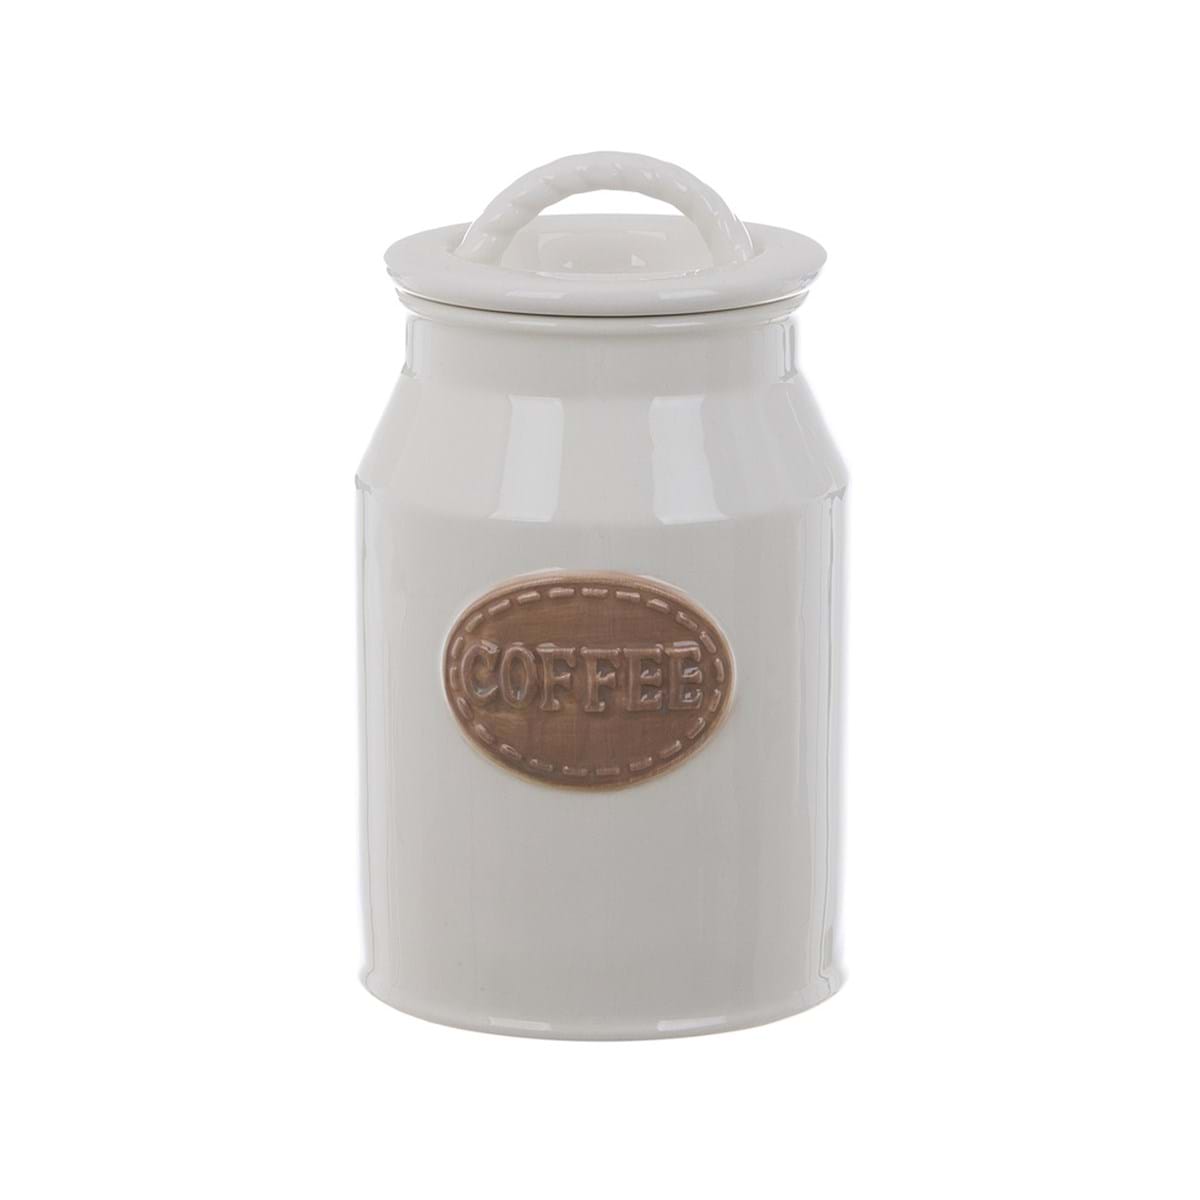 Set barattoli Sugar /Coffee in ceramica con coperchio  - Blanc Mariclo